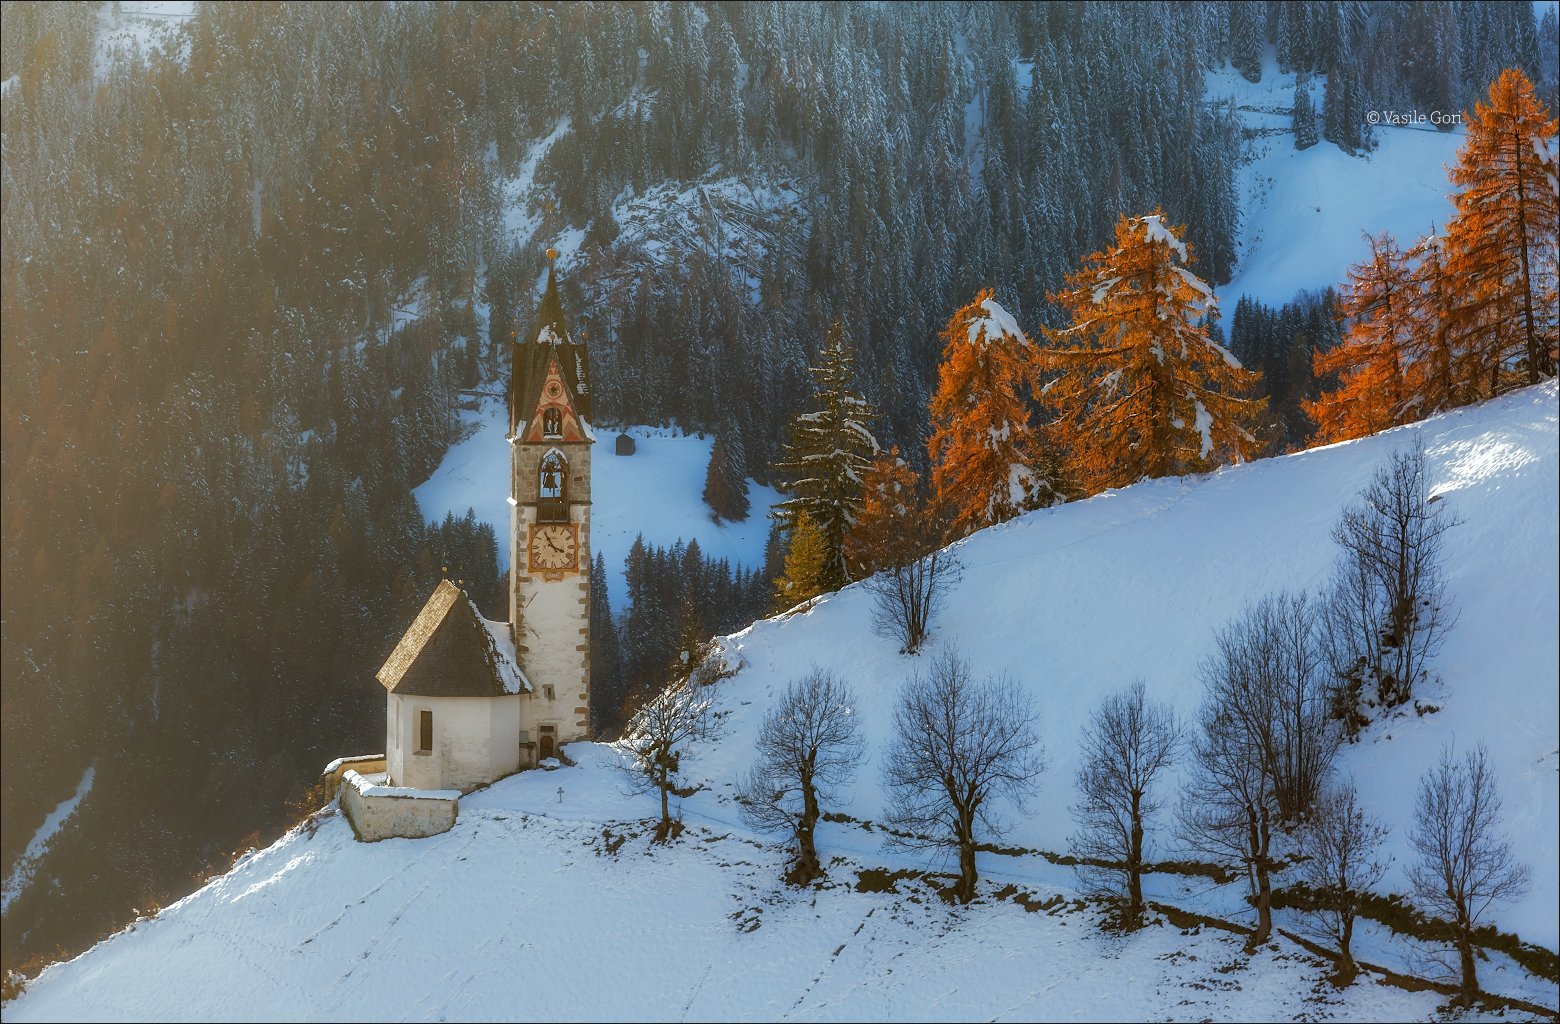 la valle wengen,доломиты,италия.сельский пейзаж,церквушка,санта барбара,толпей,первый снег, Василий Гори